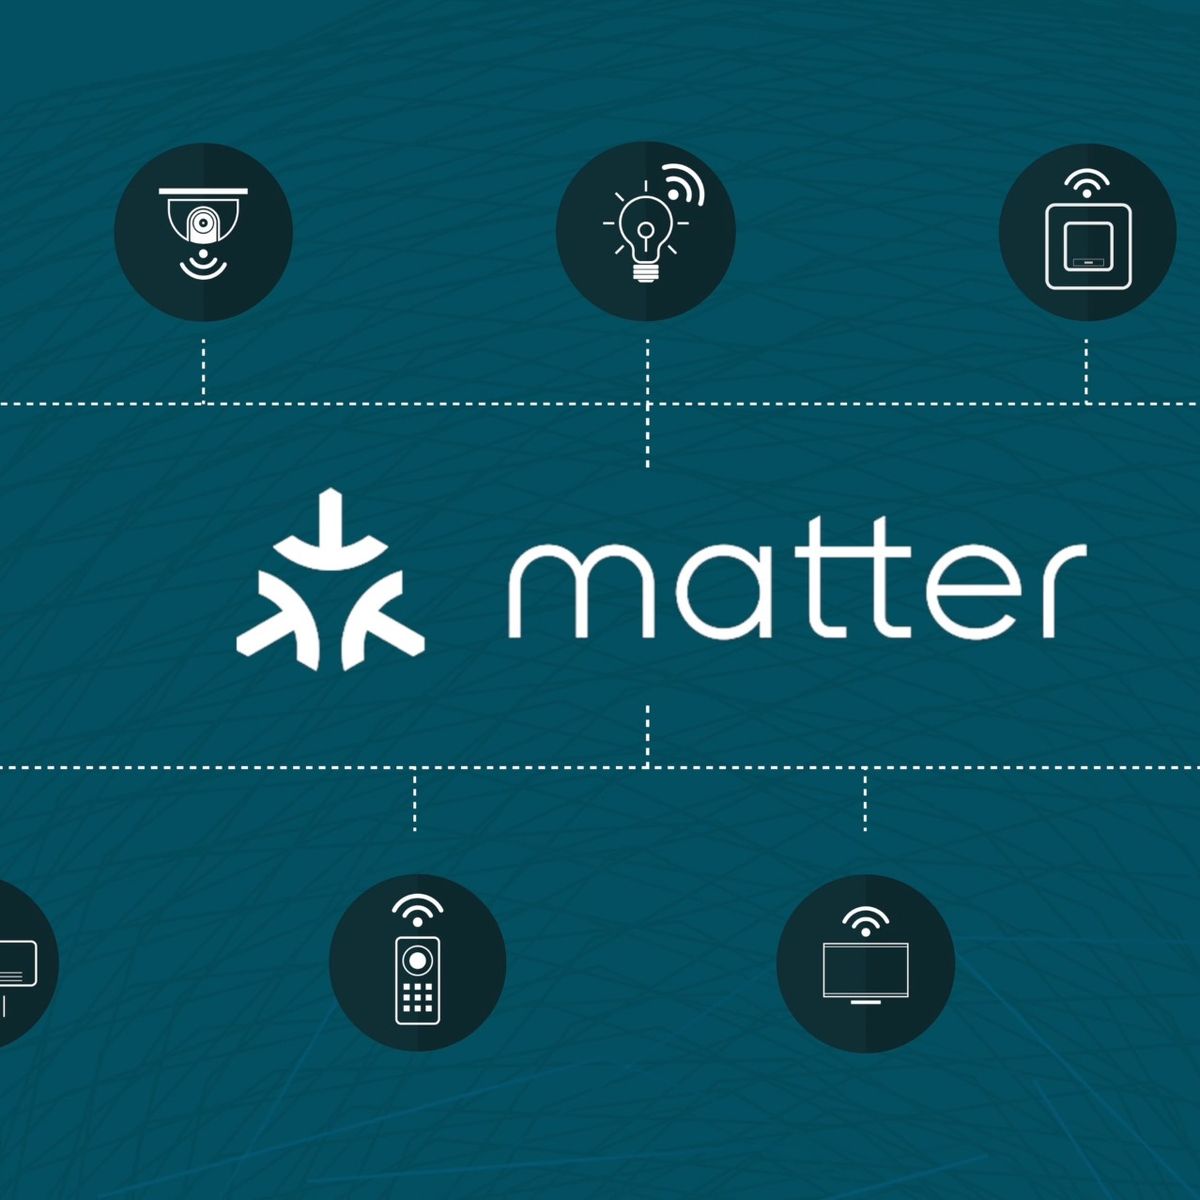 Matter 1.0 nuevo estándar para hogares inteligentes, Resideo hace parte de  la alianza